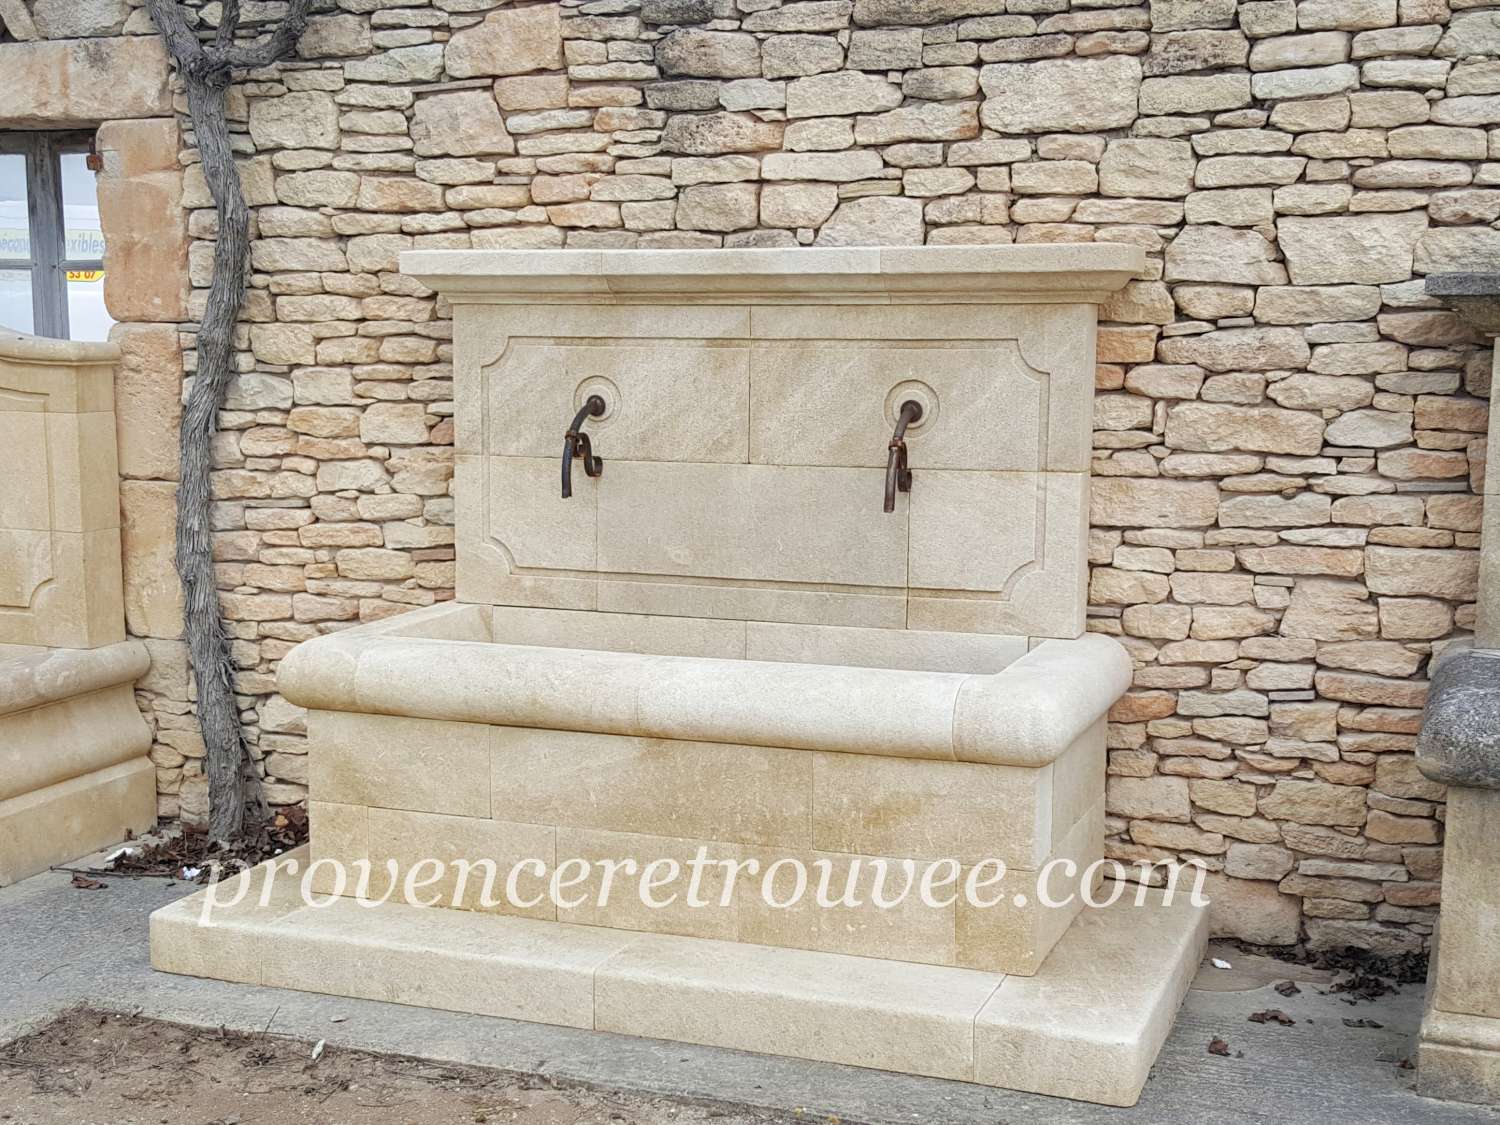 Grande fontaine extérieure en pierre avec chapiteau plat Arles fon20-204 : Avec son bassin 158x70cm posé sur une marche en pierre 204x95cm, cette grande fontaine d'exterieur en pierre naturelle pleine de charme est l'élément idéal pour donner à votre jardin l'âme authentique des villages de Provence.